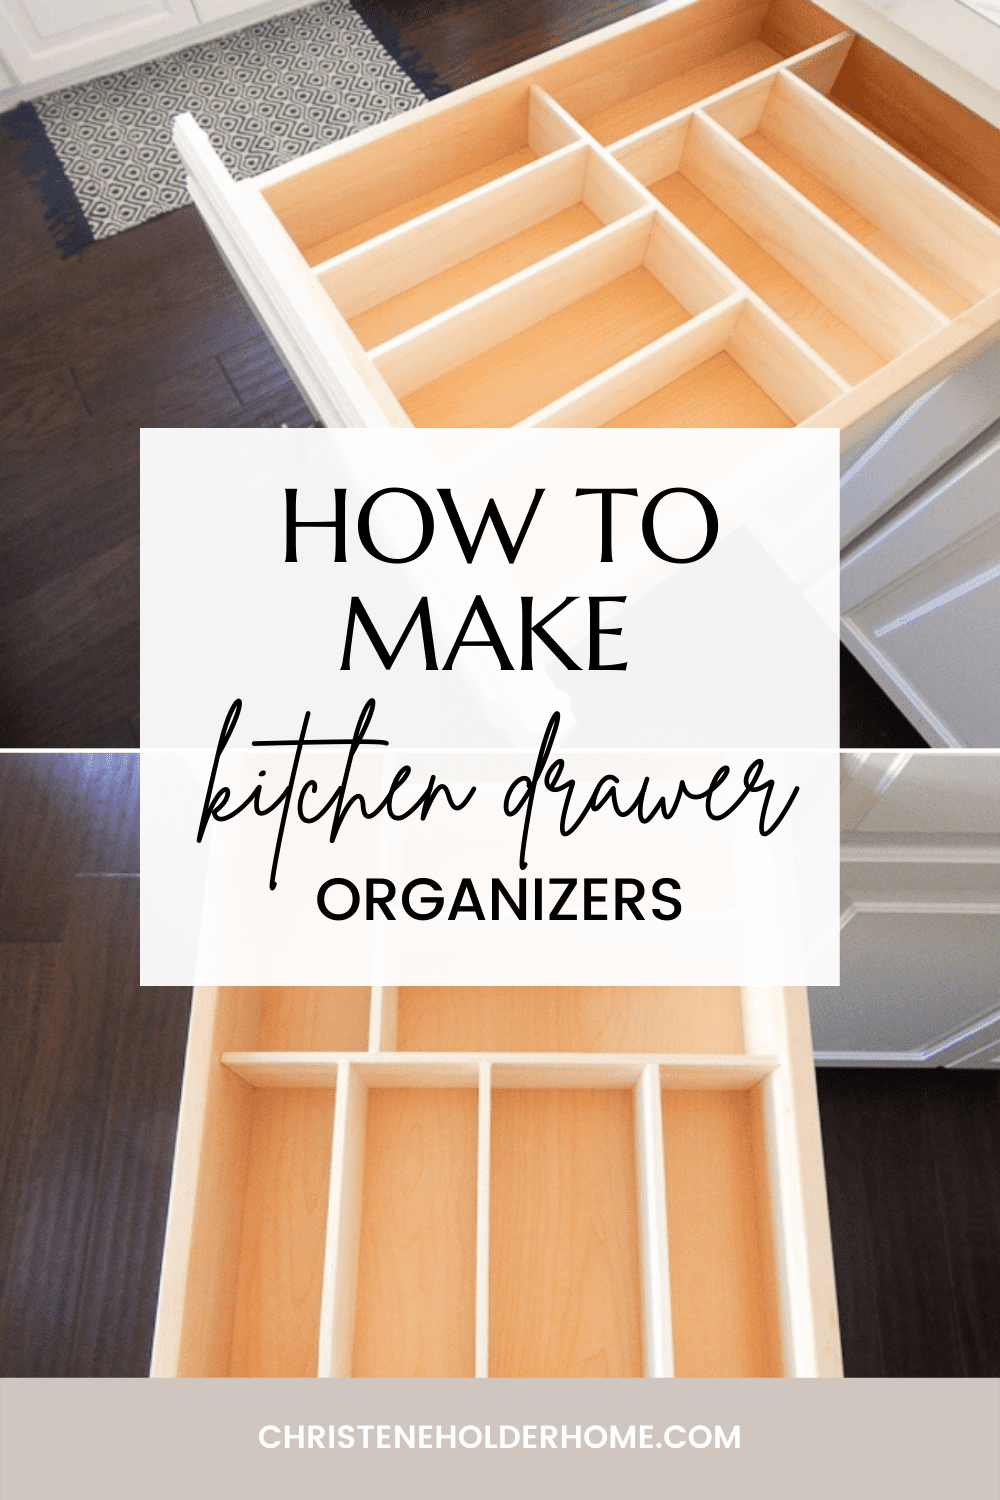 DIY Drawer Organizer